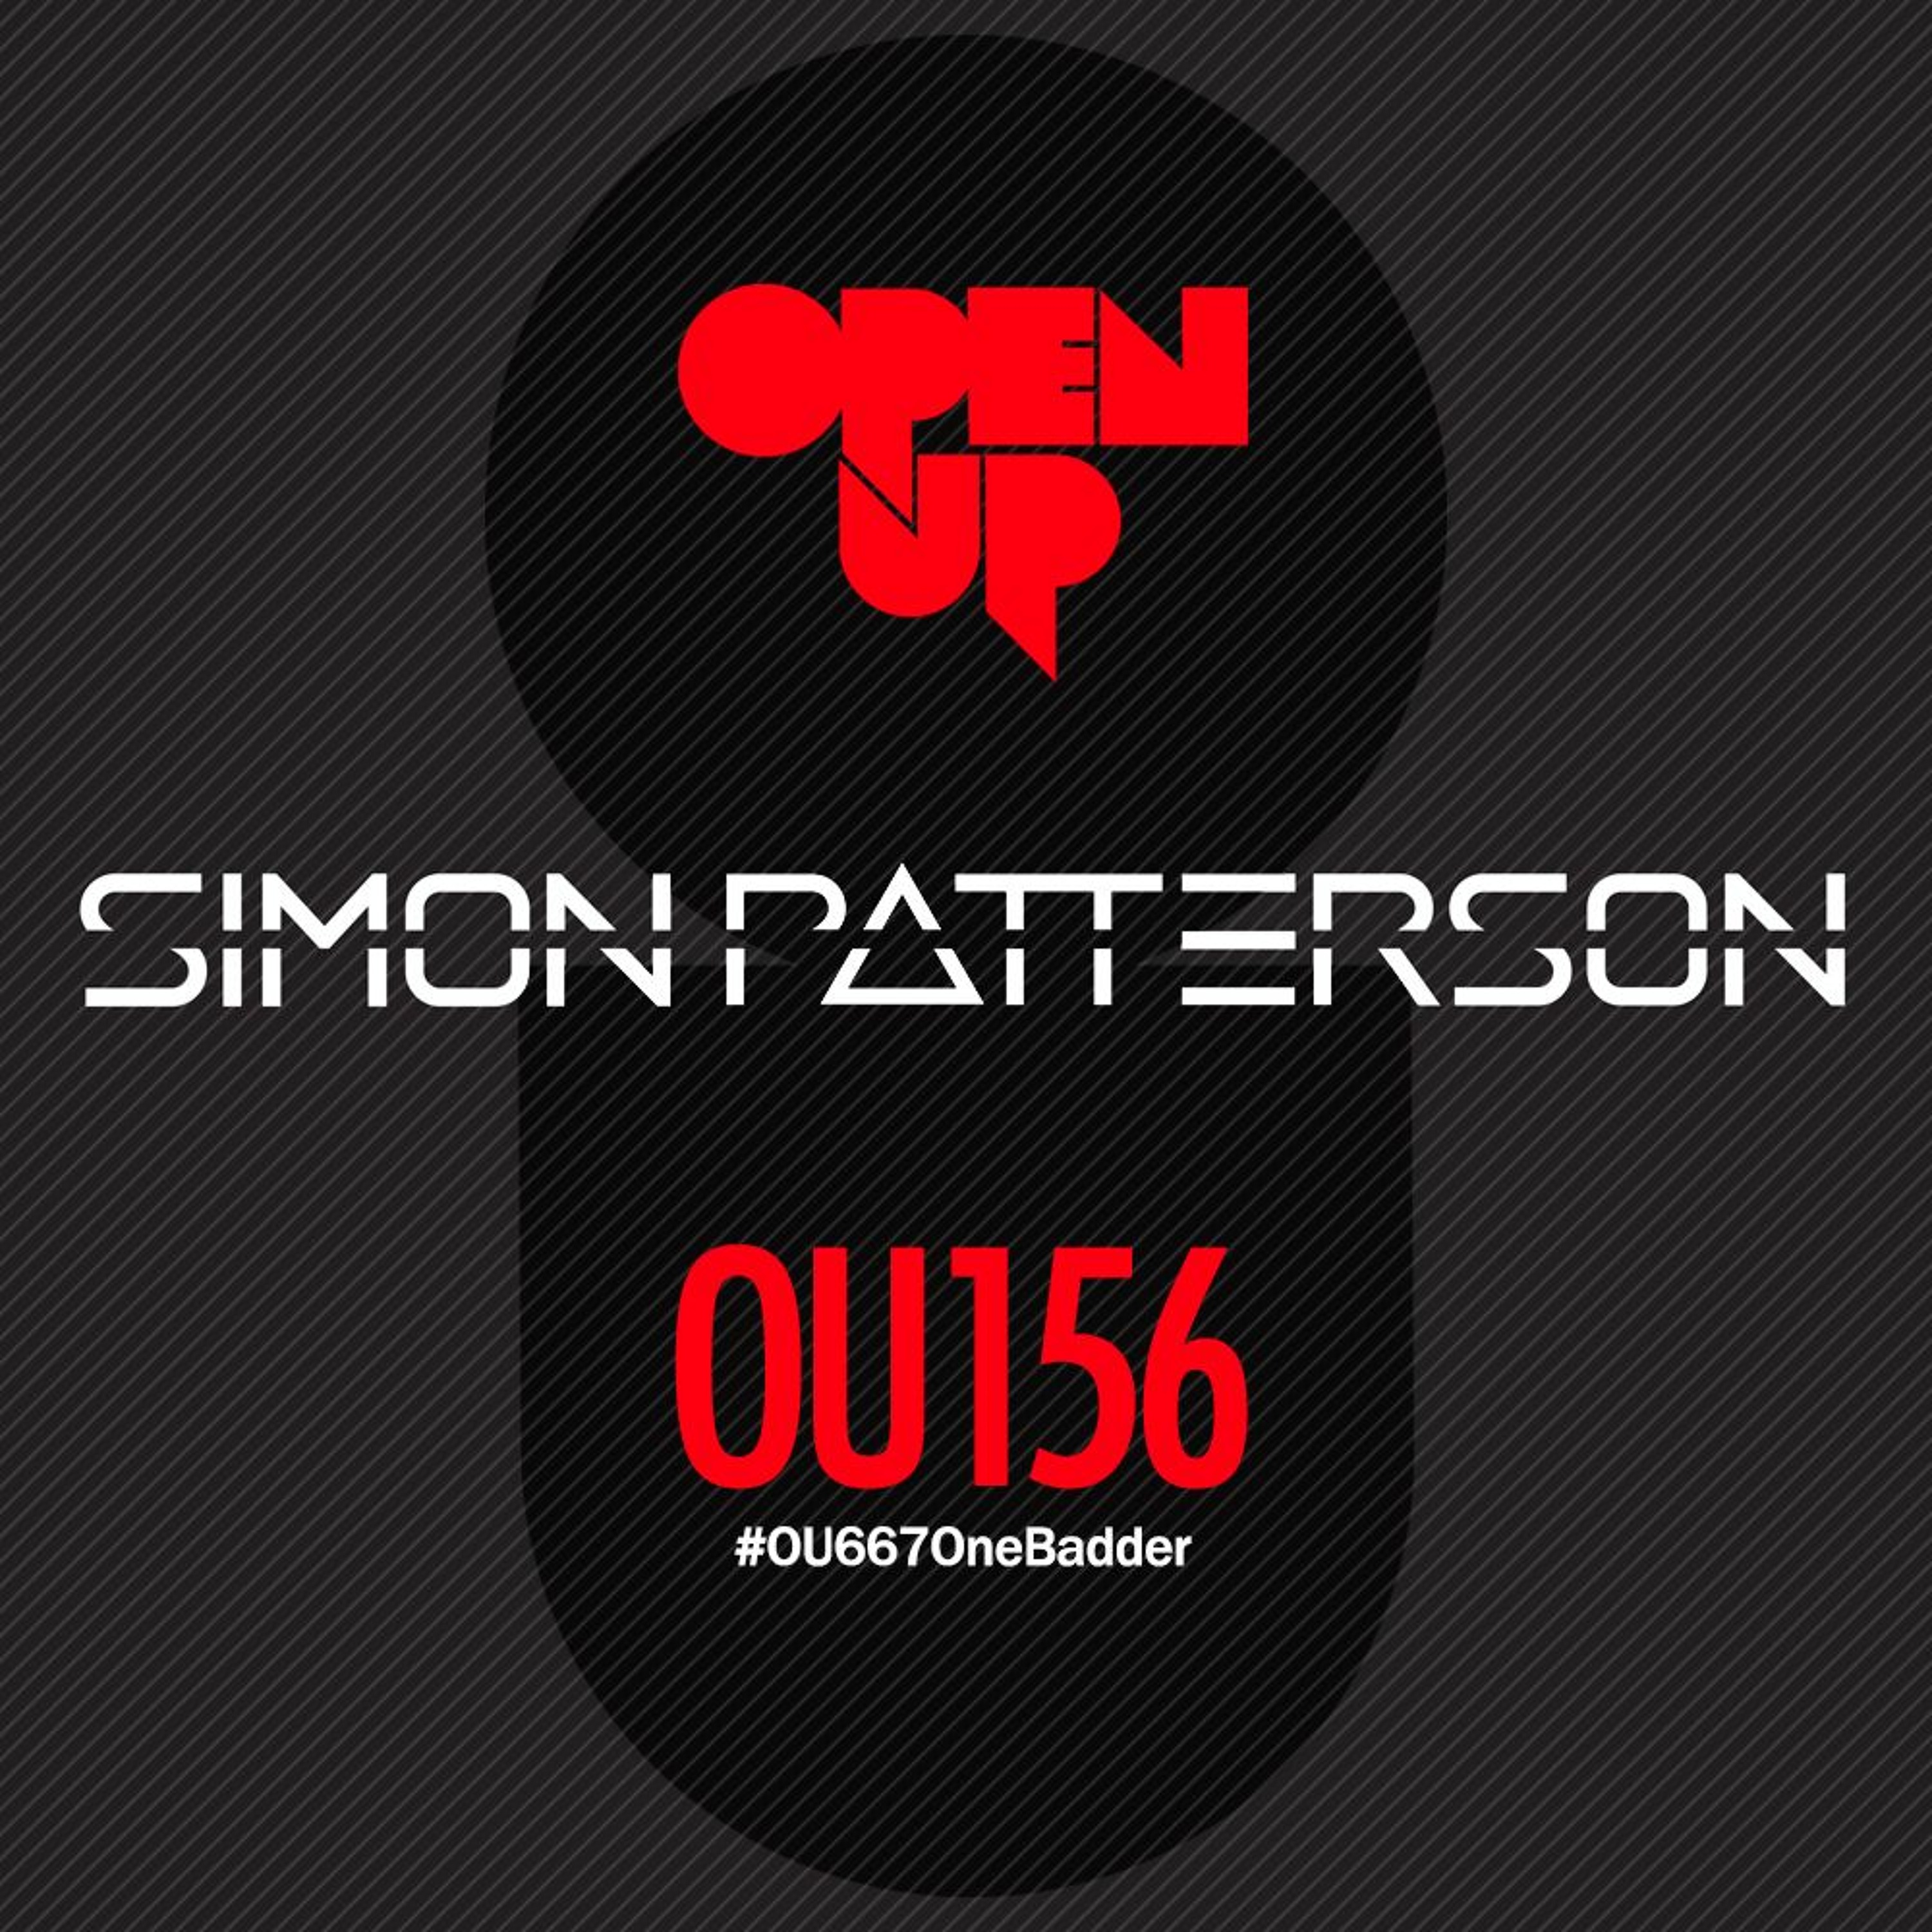 Simon Patterson - Open Up - 156 - UCast Guest Mix